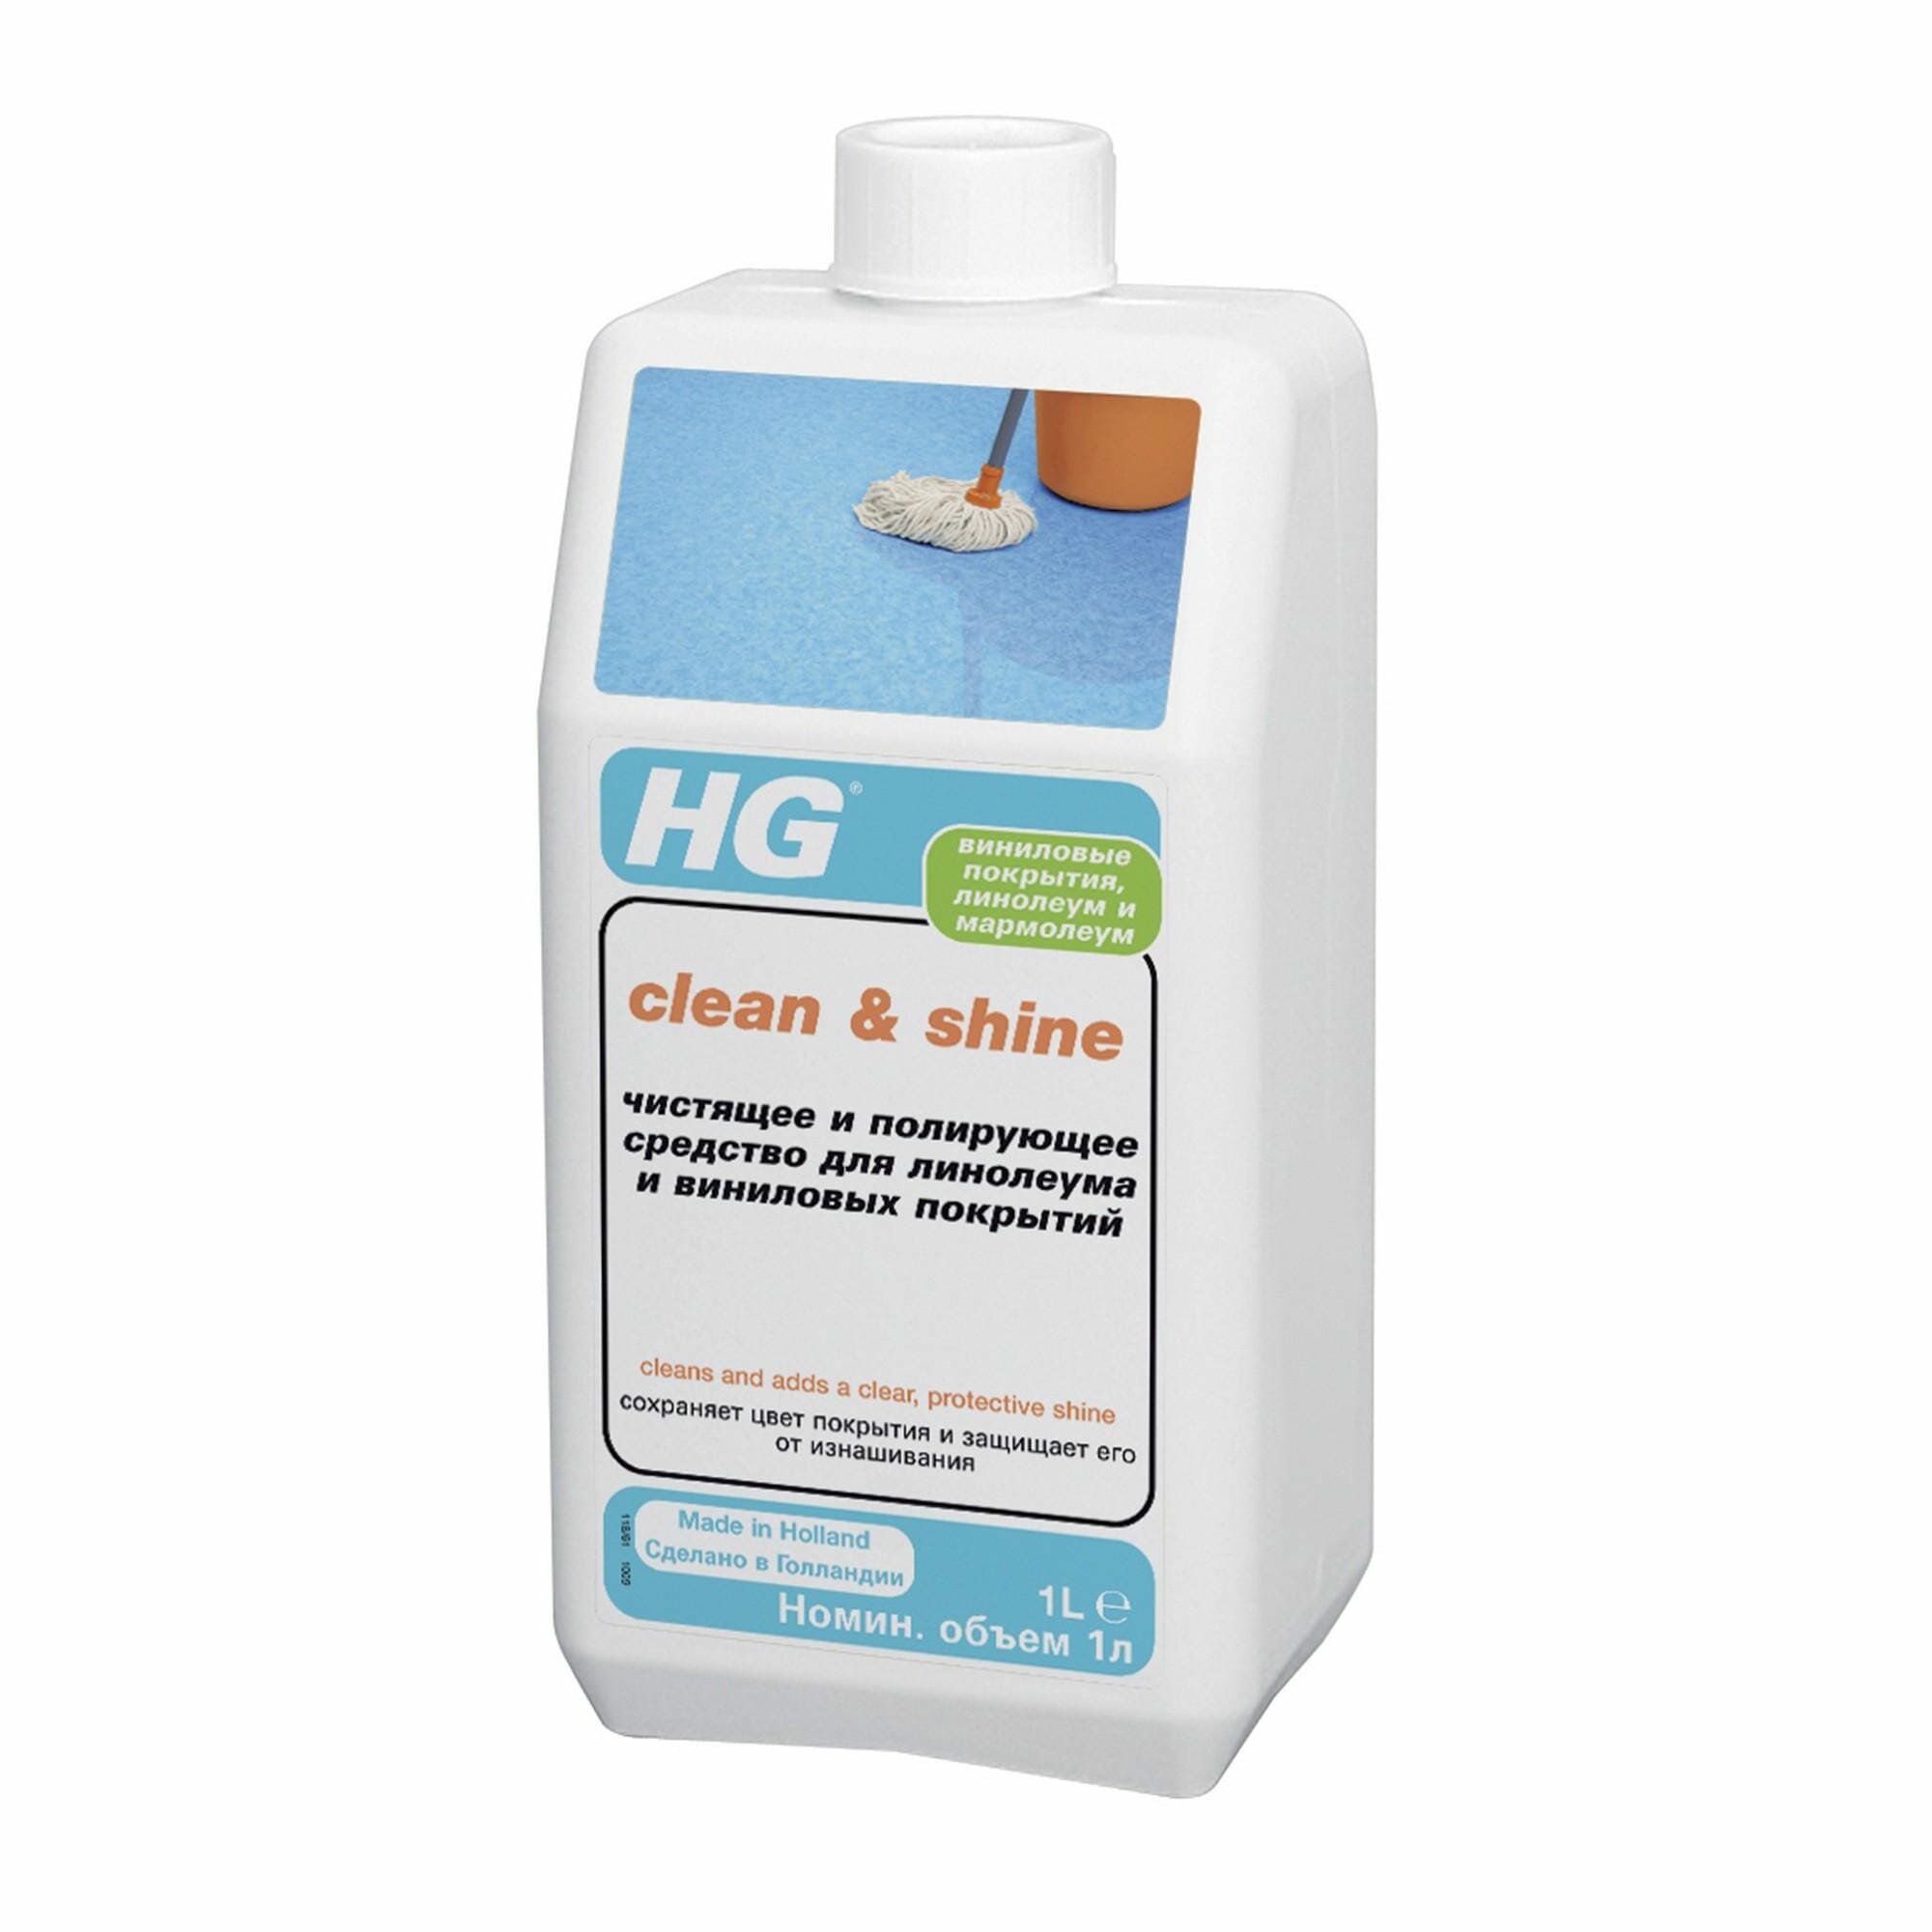 HG Чистящее и полирующее средство для линолеума и виниловых покрытий